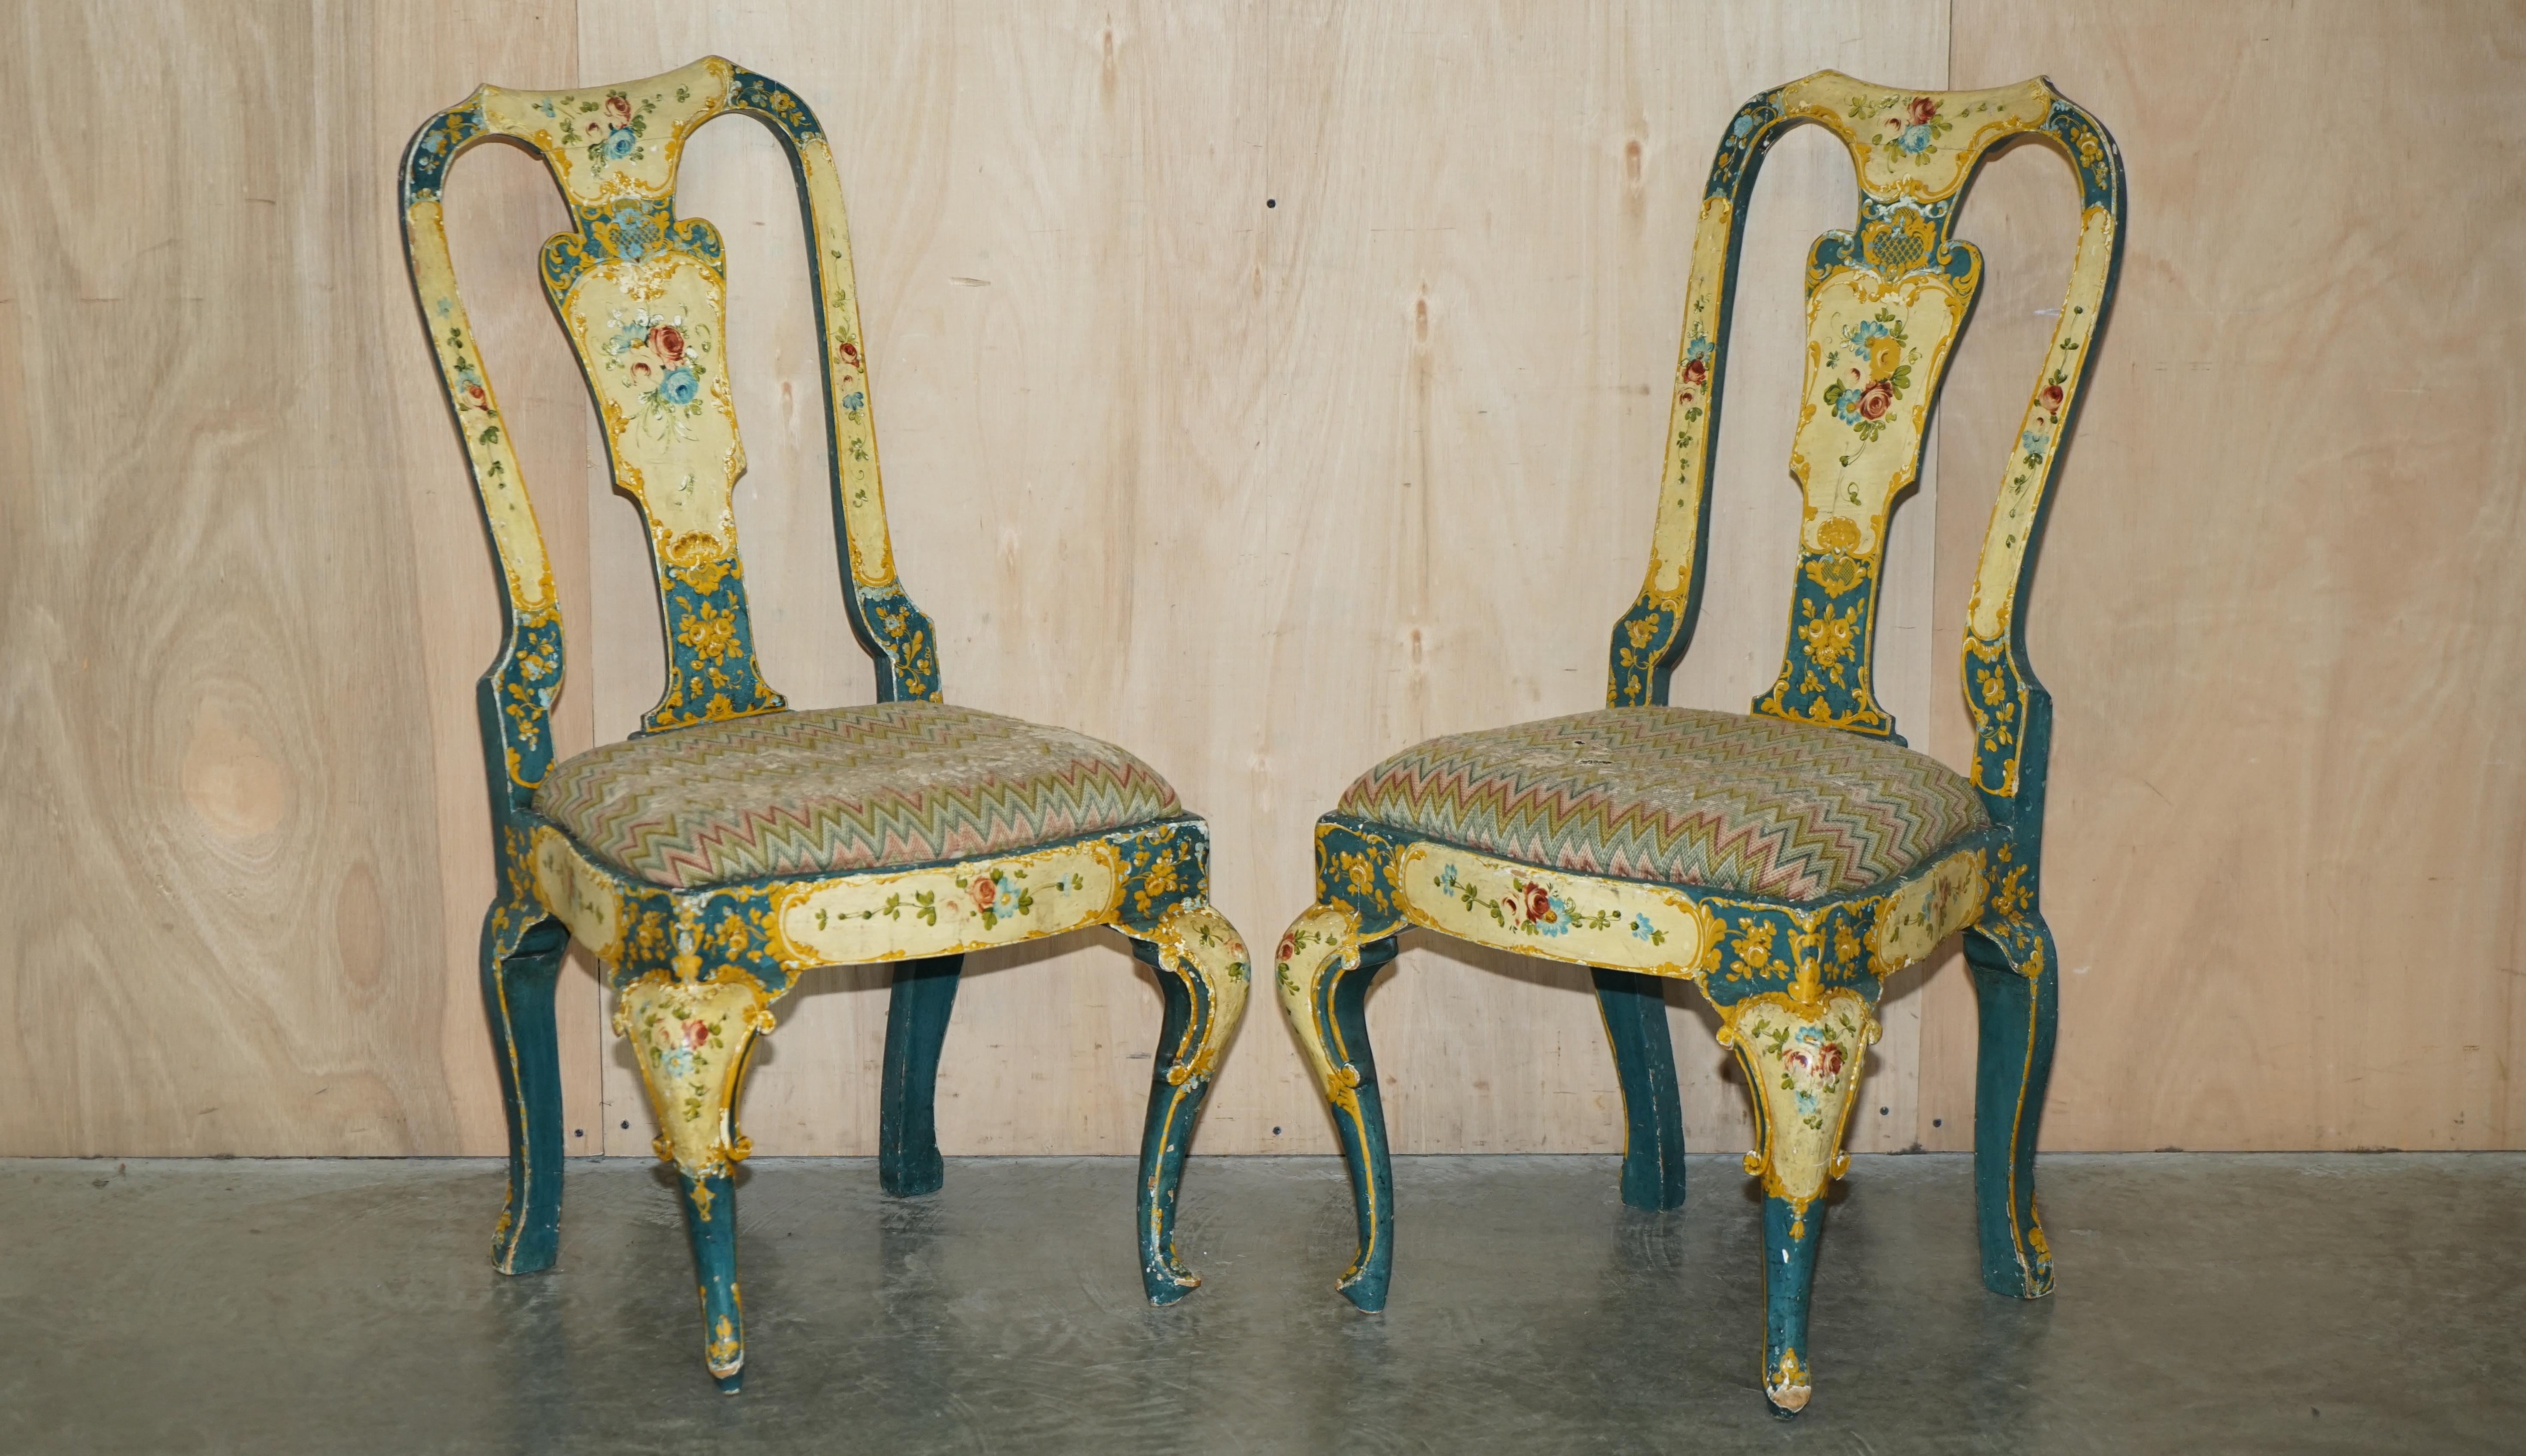 Royal House Antiques

Royal House Antiques freut sich, diese atemberaubende und außerordentlich seltene Garnitur von zwei Beistellstühlen im Queen-Anne-Stil mit einem passenden Beistelltisch in der originalen Blumenbemalung (ca. 1810-1820) aus dem